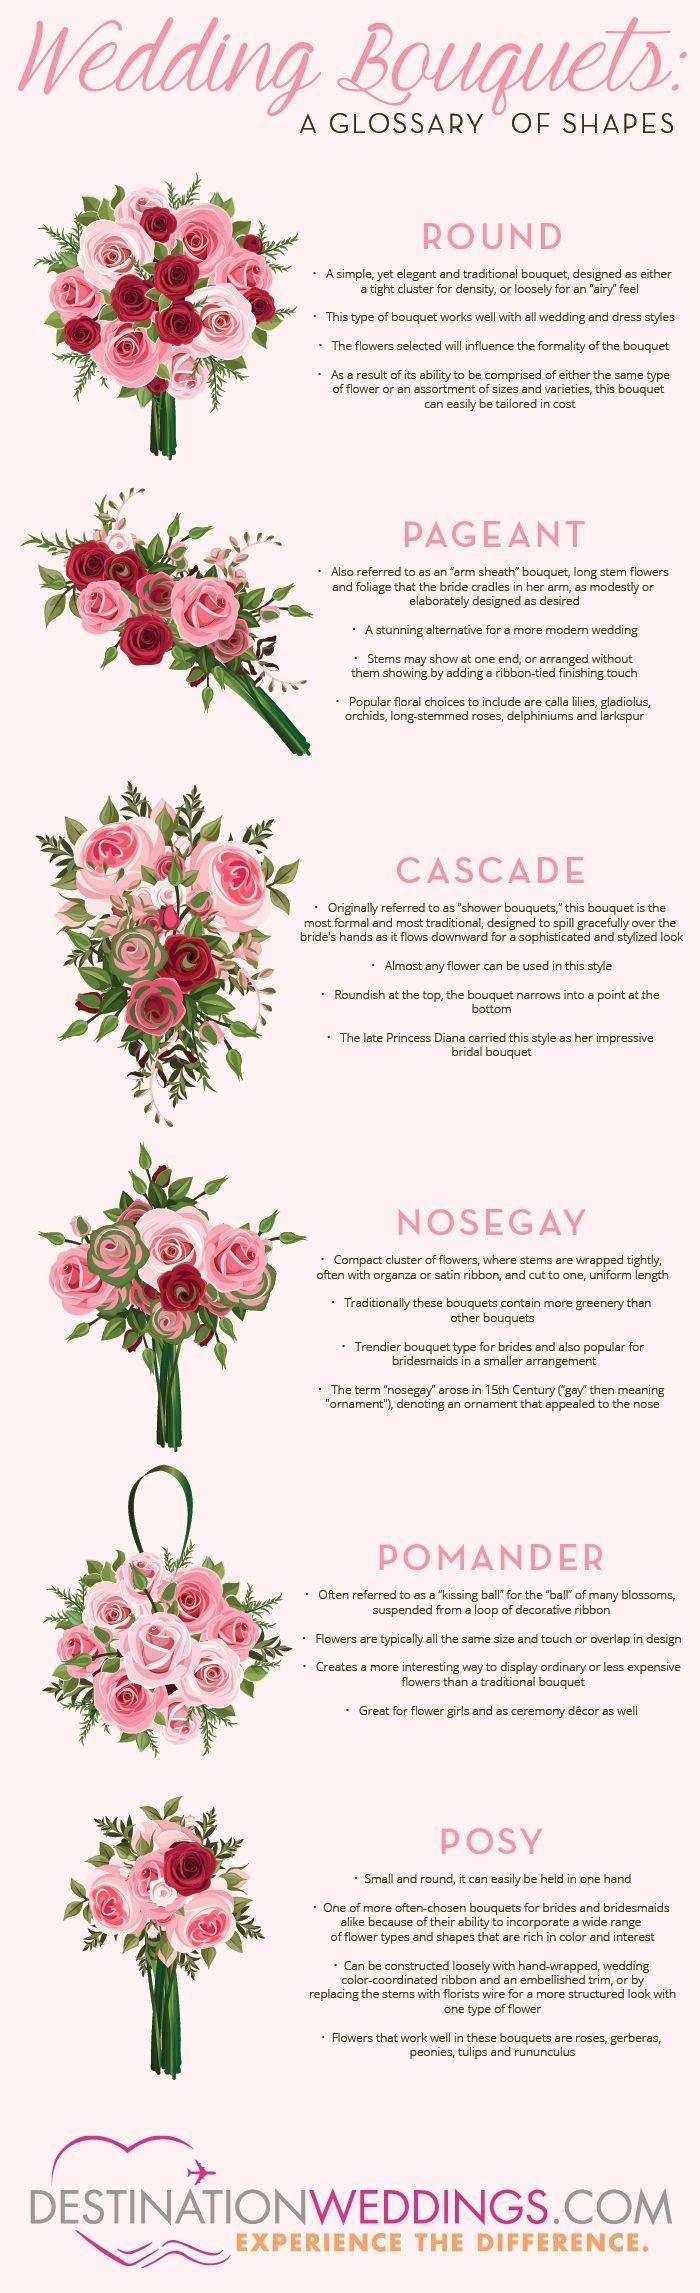 ¿No estás segura de qué forma de bouquet quieres para tu boda? Con En esta infografía, podrás aclarar tus dudas. #RamosNovia